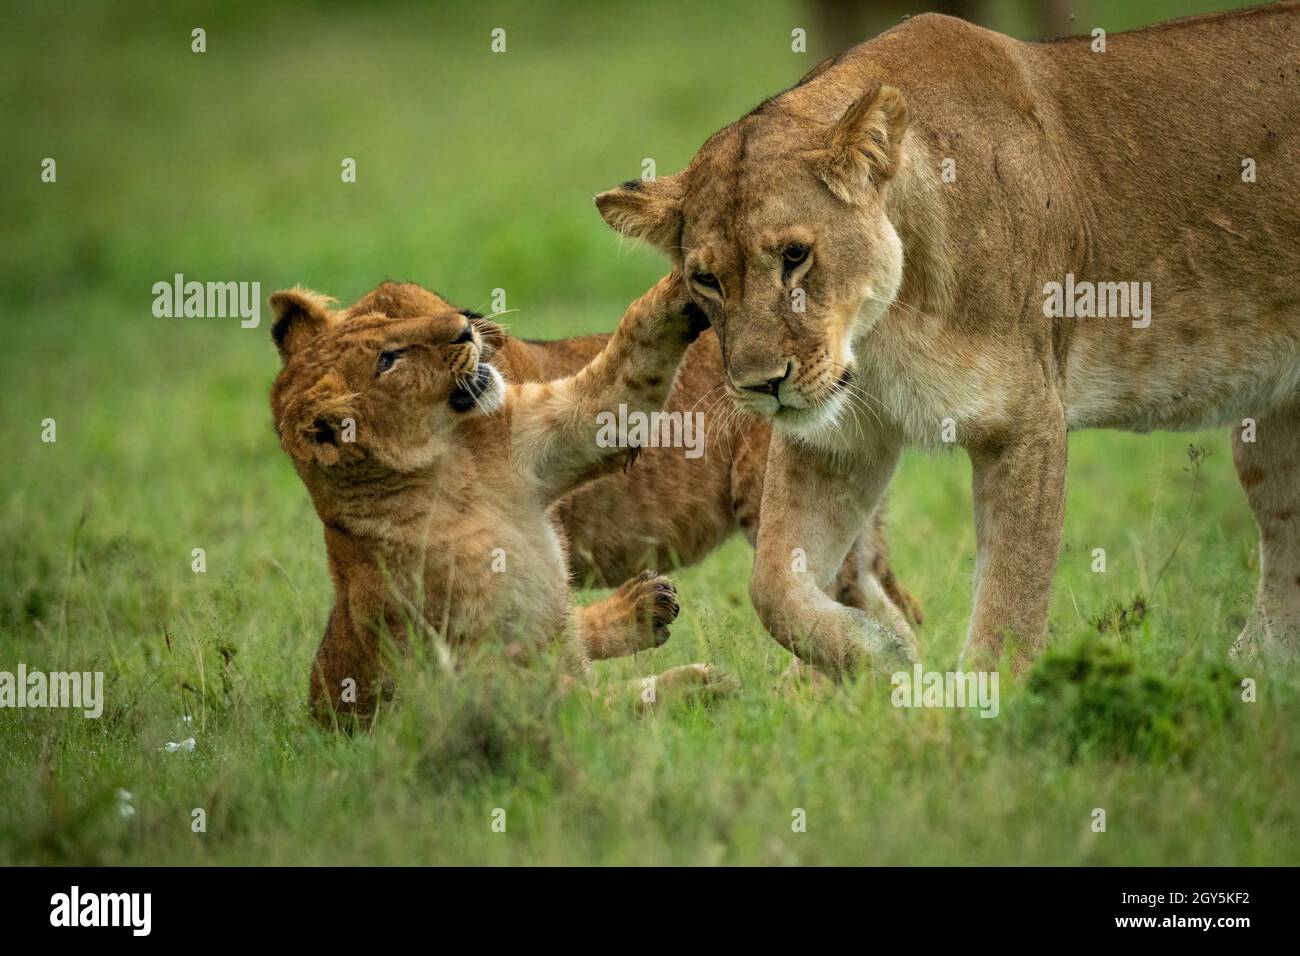 El cachorro de león se sienta con una leona que pasa por delante Foto de stock